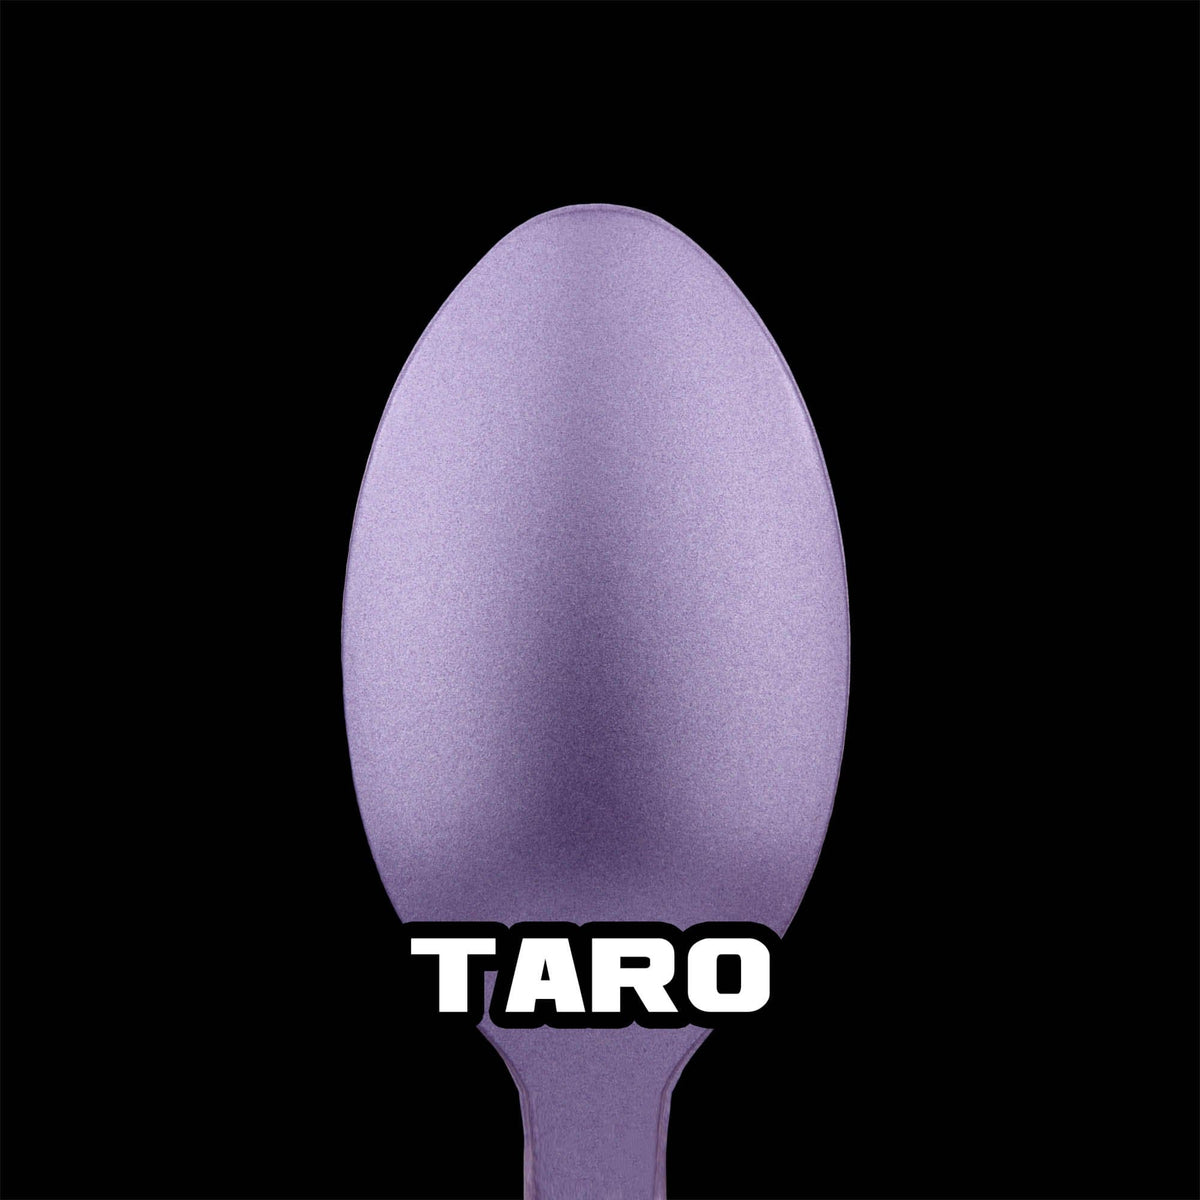 Taro Metallic Acrylic Paint Metallic Turbo Dork Exit 23 Games Taro Metallic Acrylic Paint